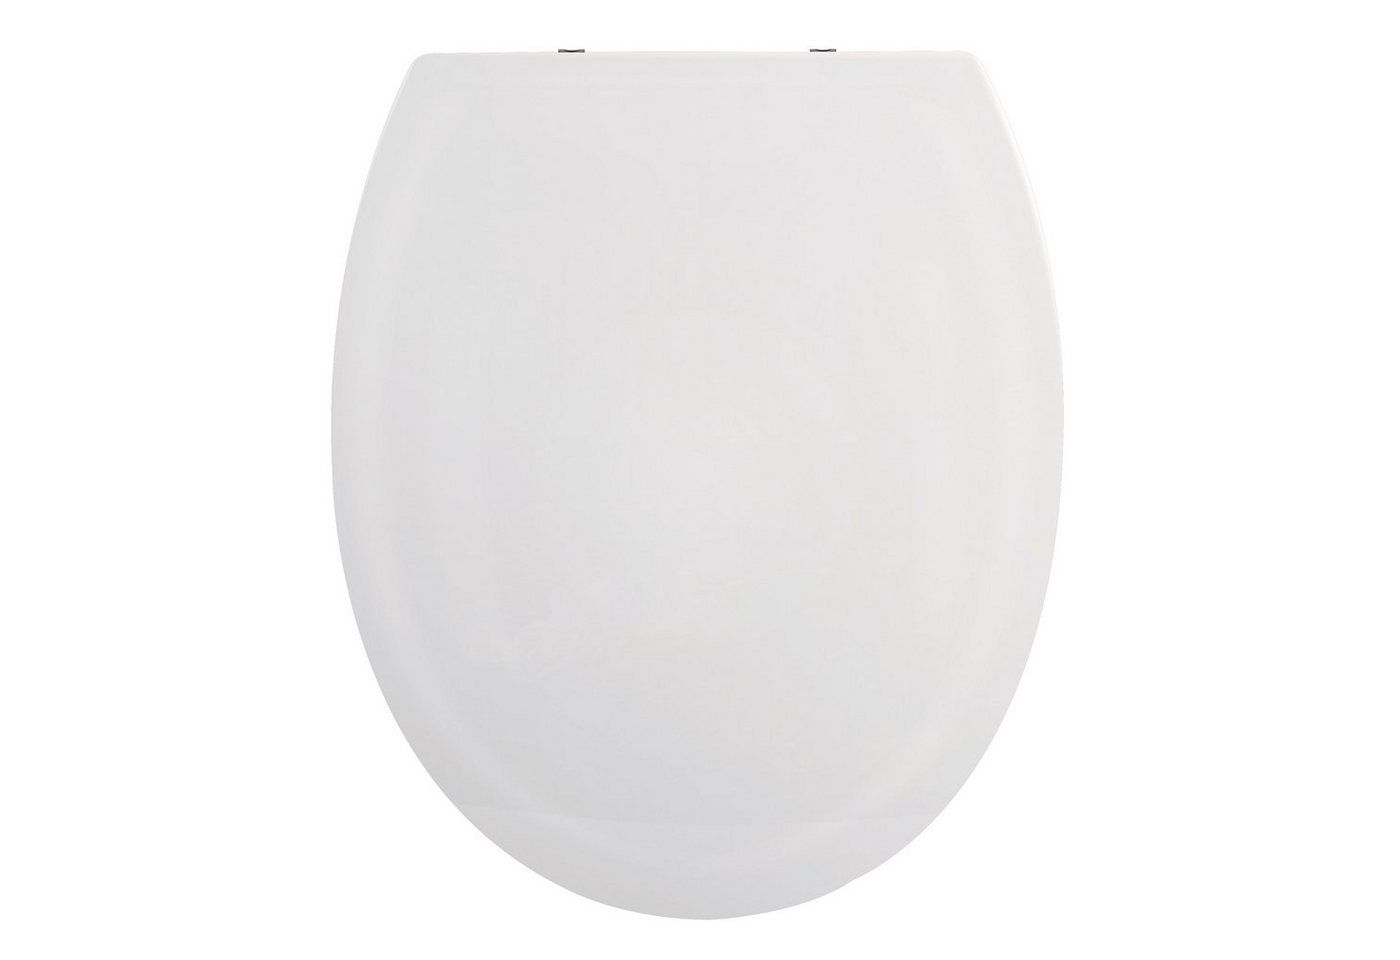 spirella WC-Sitz HARRY, Premium Toilettendeckel aus leichtem PP Thermoplast Kunststoff, hohe Stabilität, bruchsicher, Edelstahl Scharniere mit Quick-Release-Funktion zur einfachen Schnellreinigung, Soft Close Absenkautomatik, oval, weiß von spirella